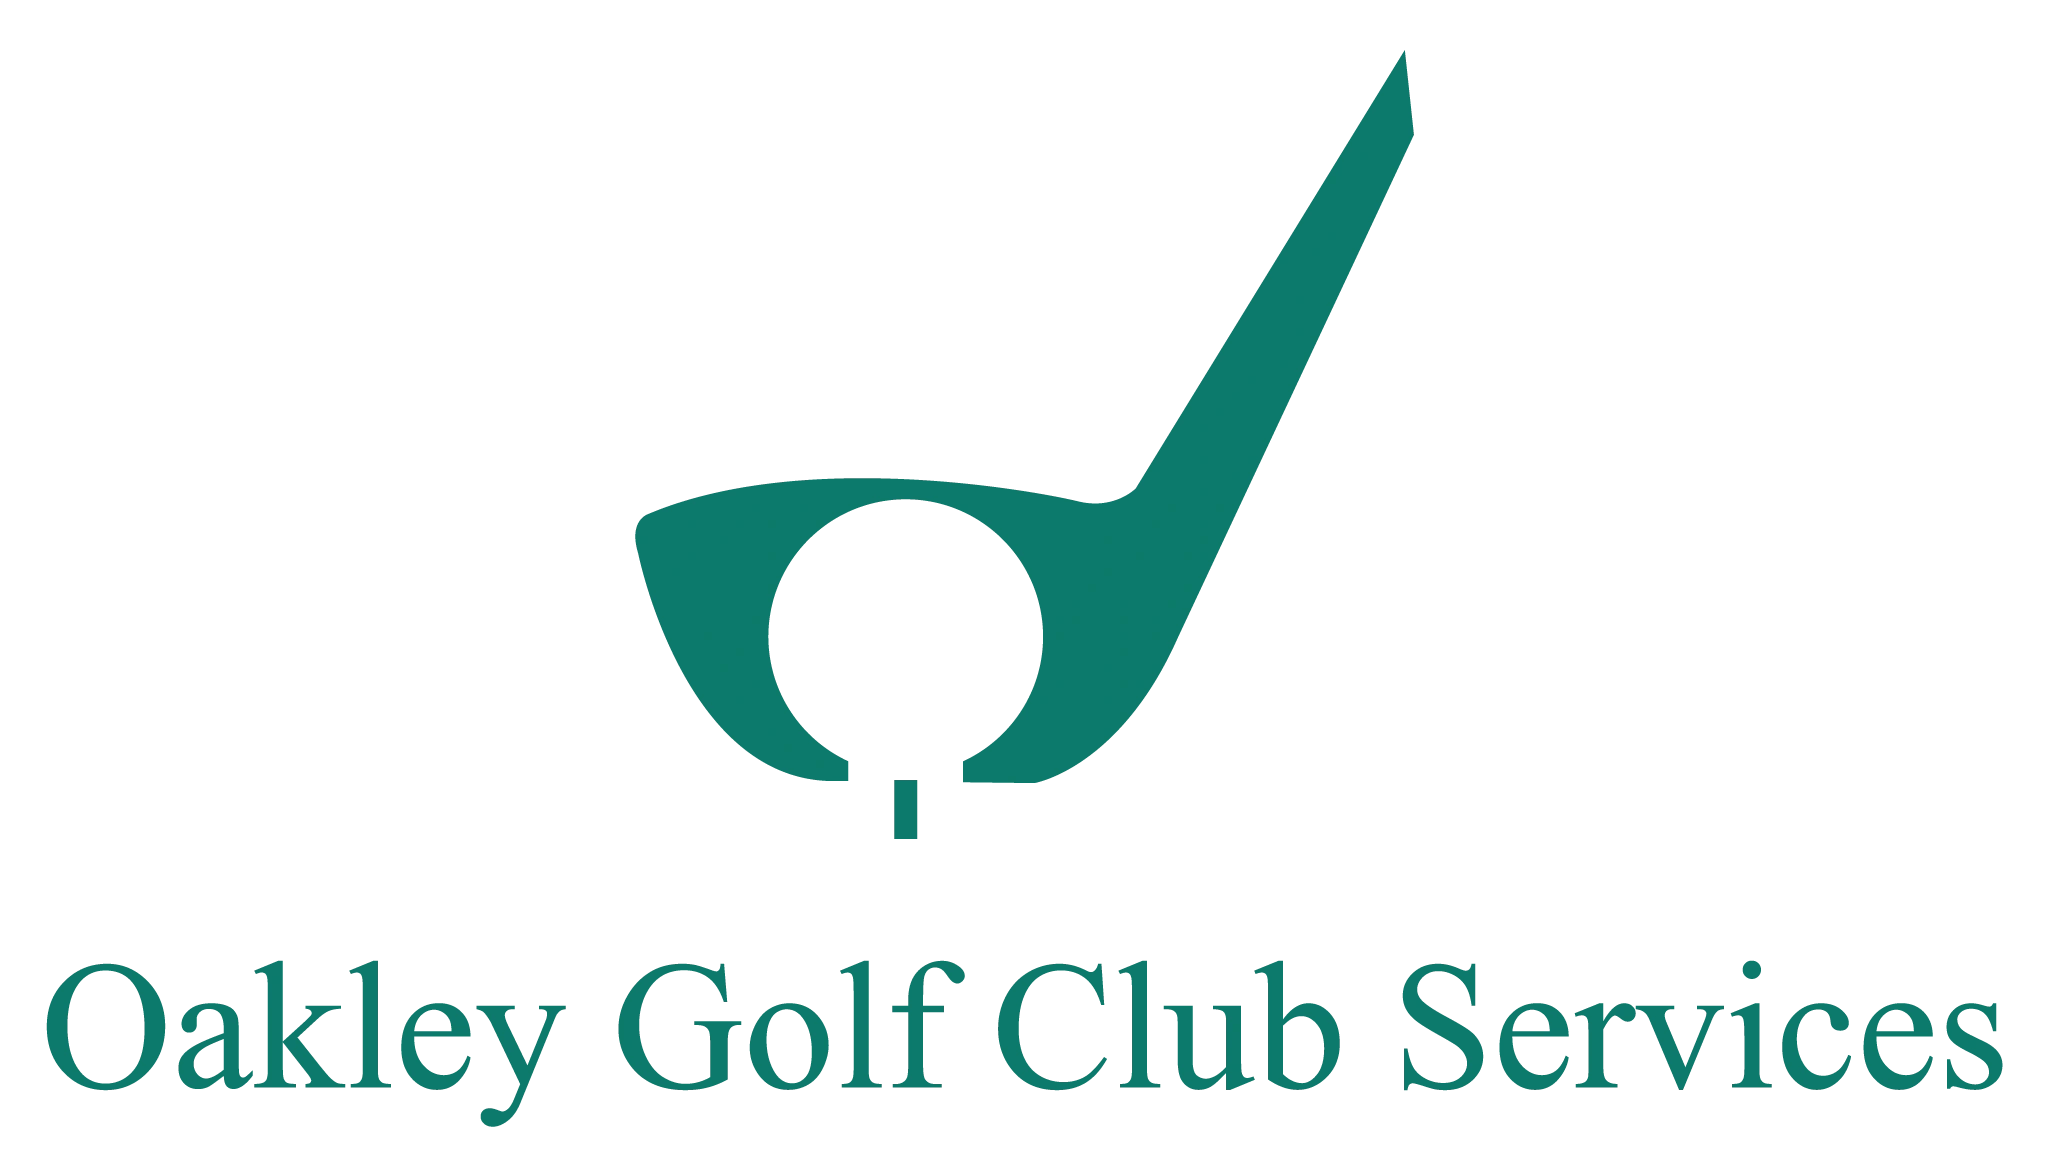 Oakley Golf Club Services